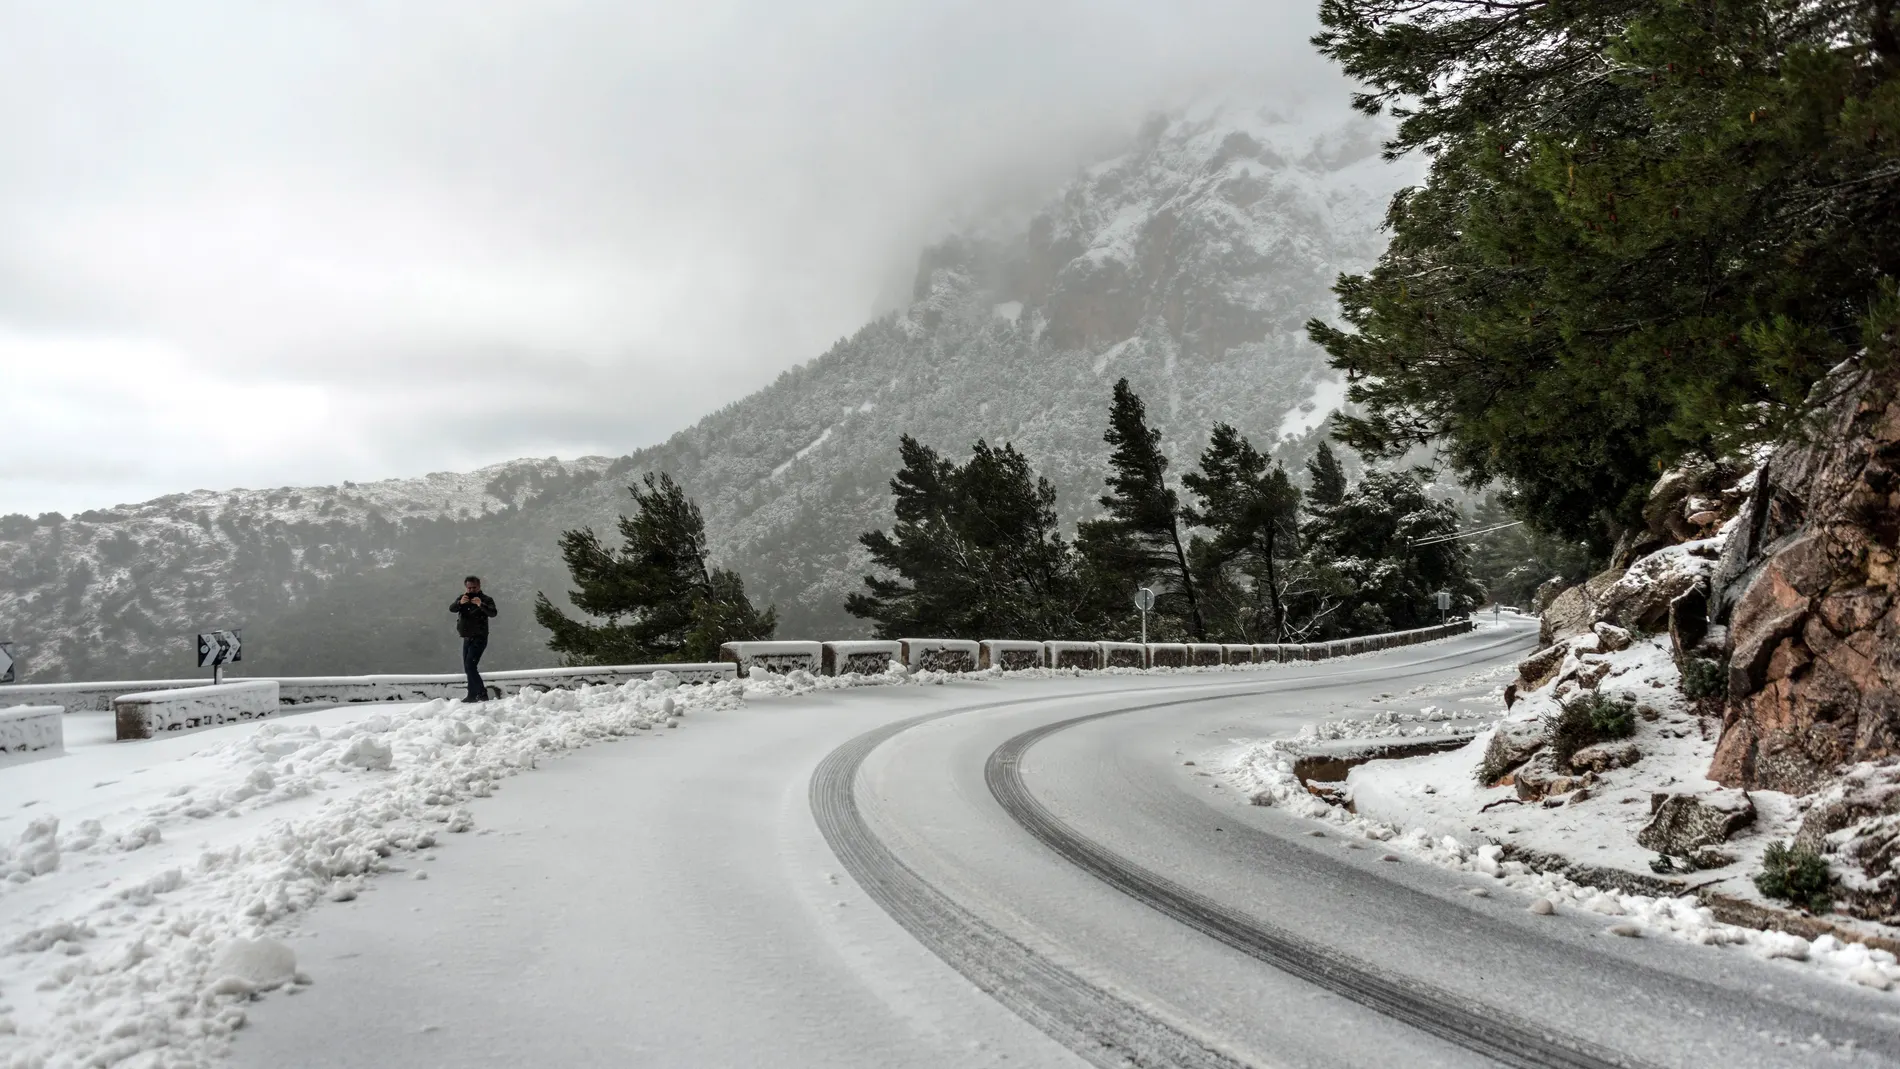 La nieve caída cubre una de las carreteras de Soller